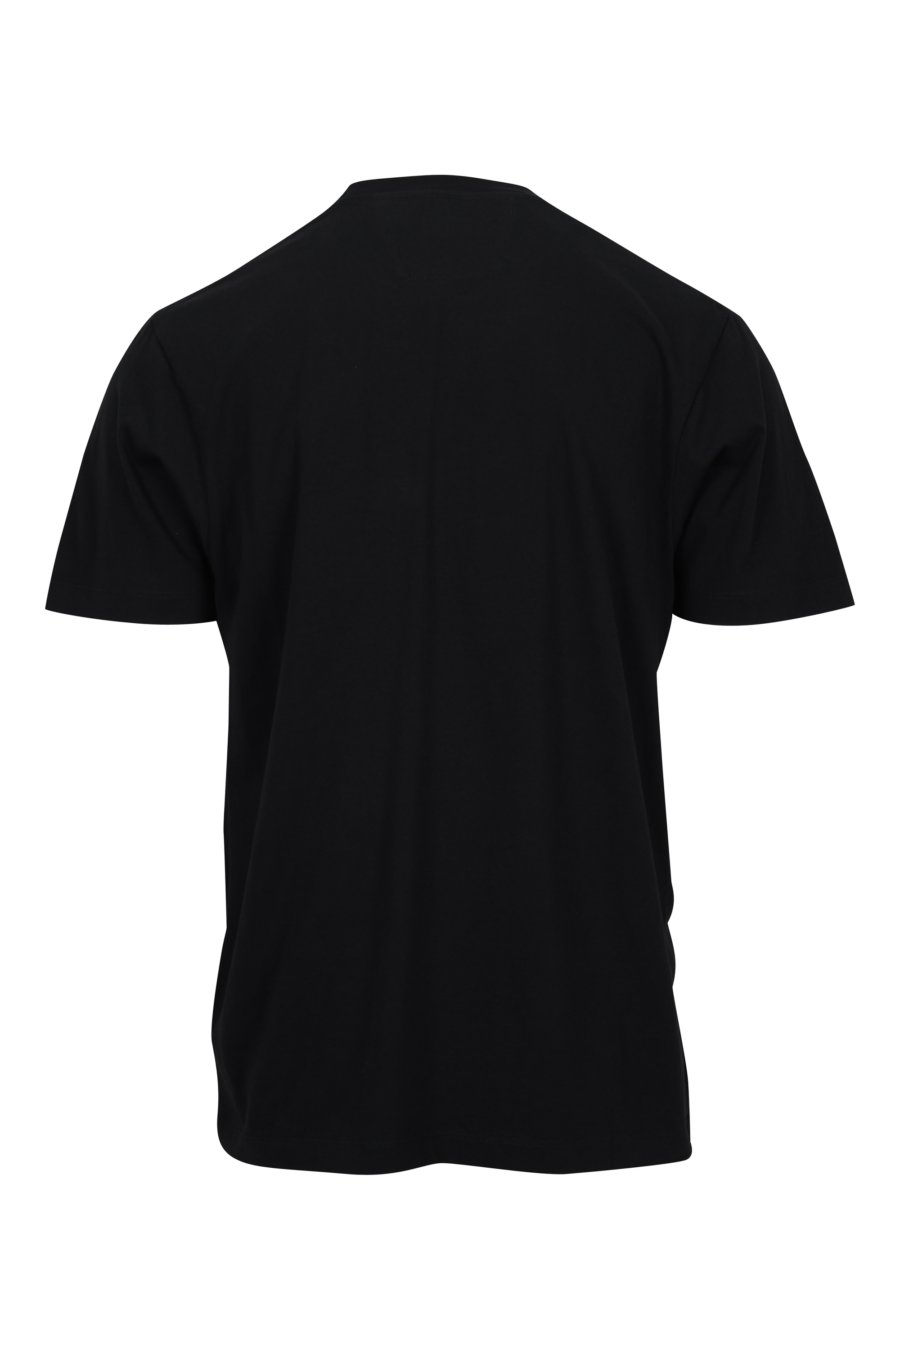 Camiseta negra con minilogo parche blanco "cp" centrado - 7620943764284 1